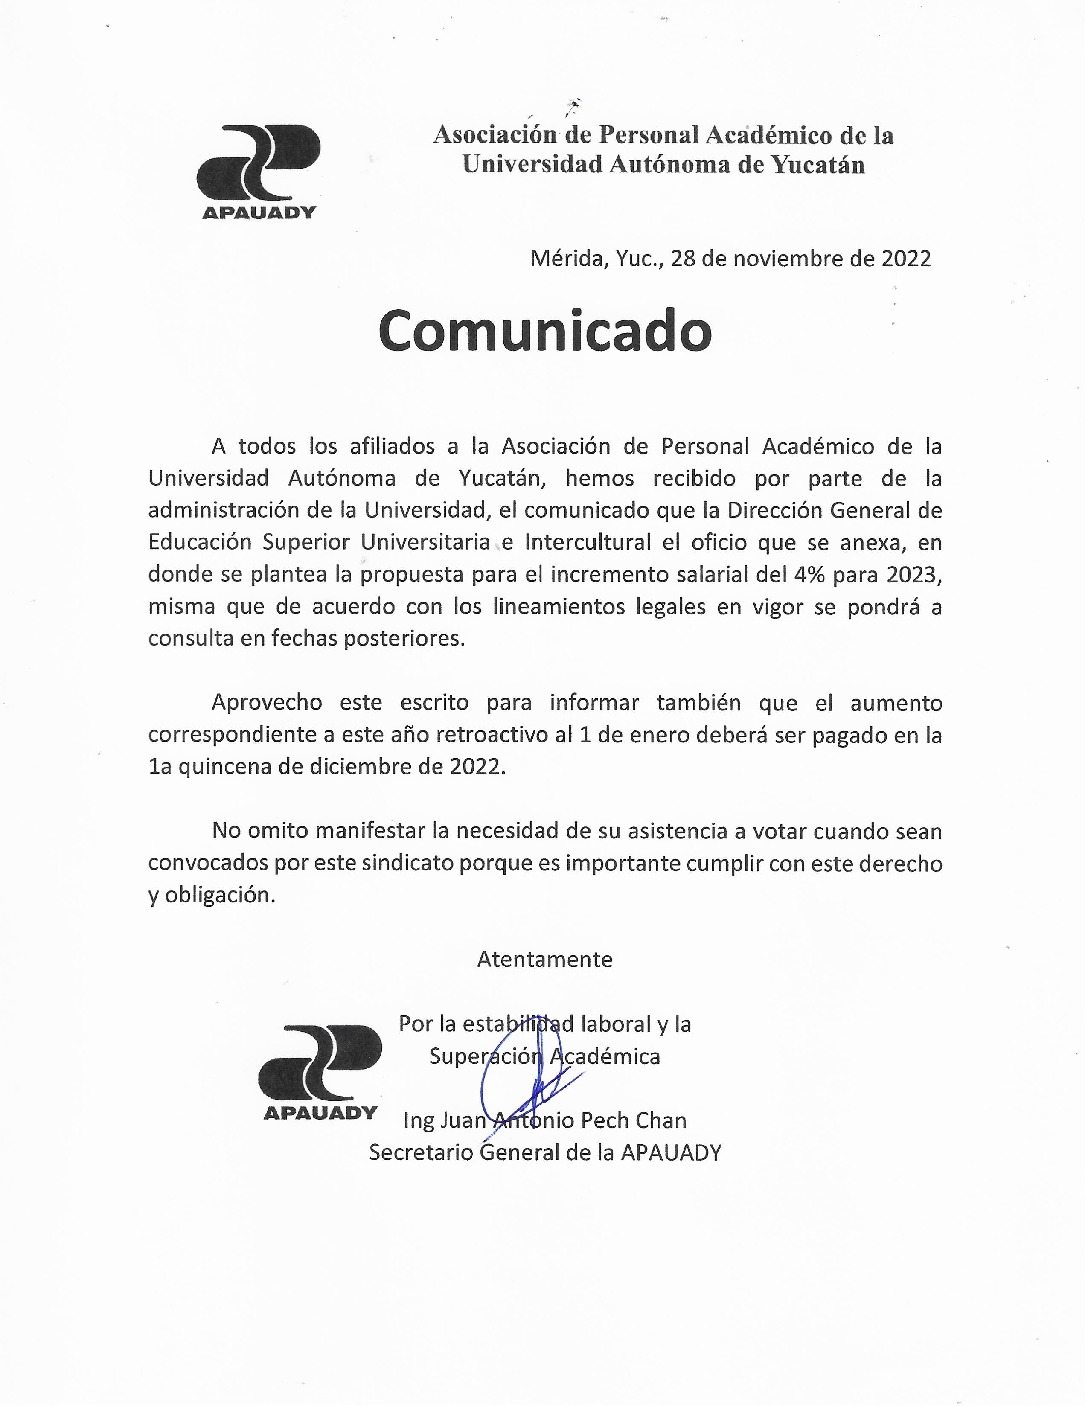 Featured image for “Comunicado | Propuesta Incremento Salarial 2023”